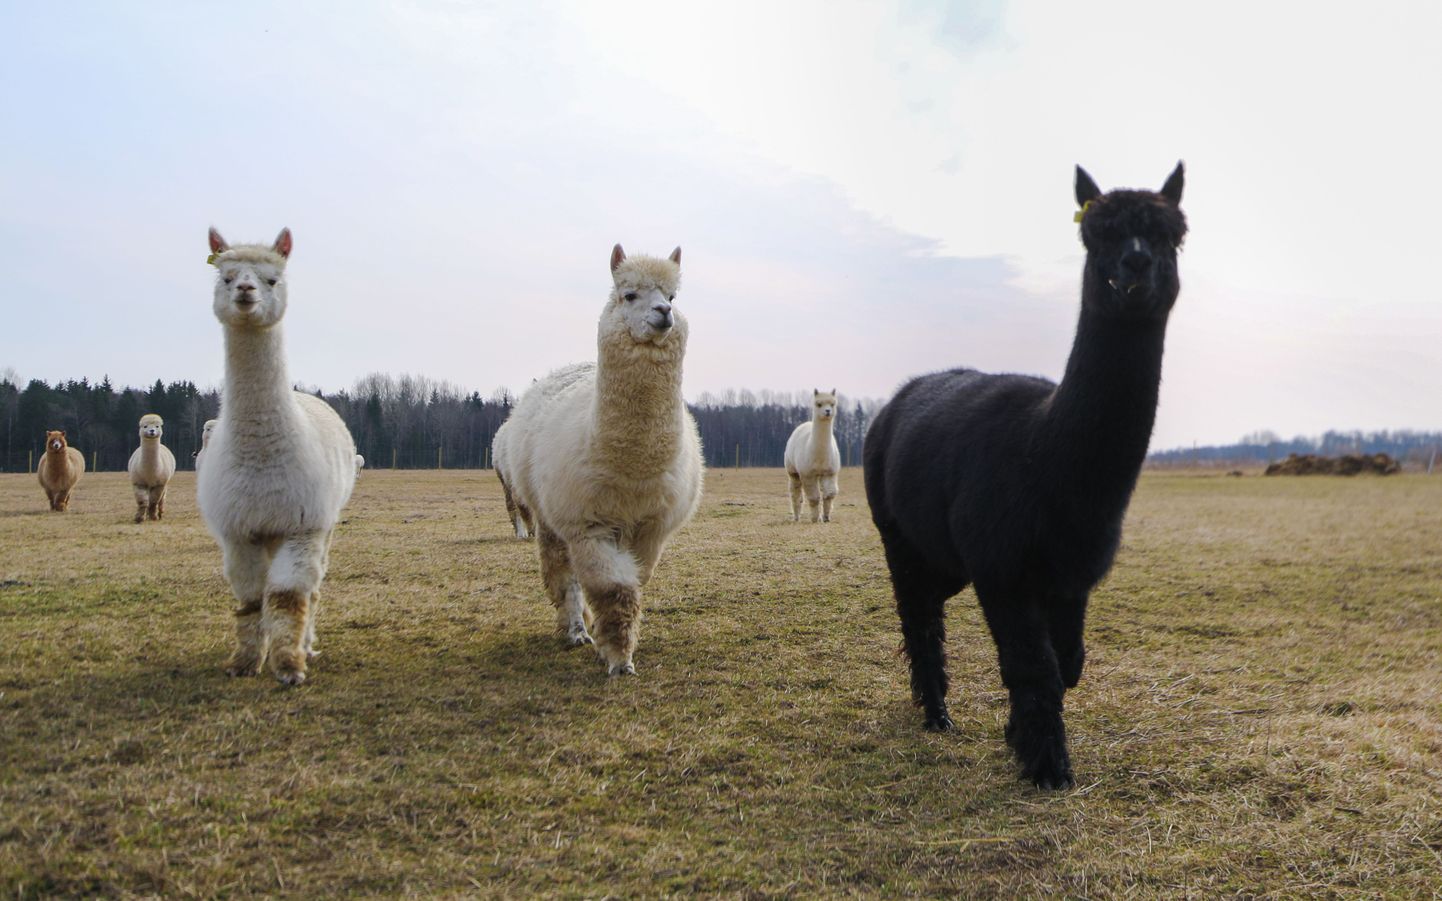 Kuigi Eesti suurim alpakakasvatus asub Pärnumaal Ares, võib nende toredate ja fotogeeniliste loomadega tutvust teha ka Ponimaal.